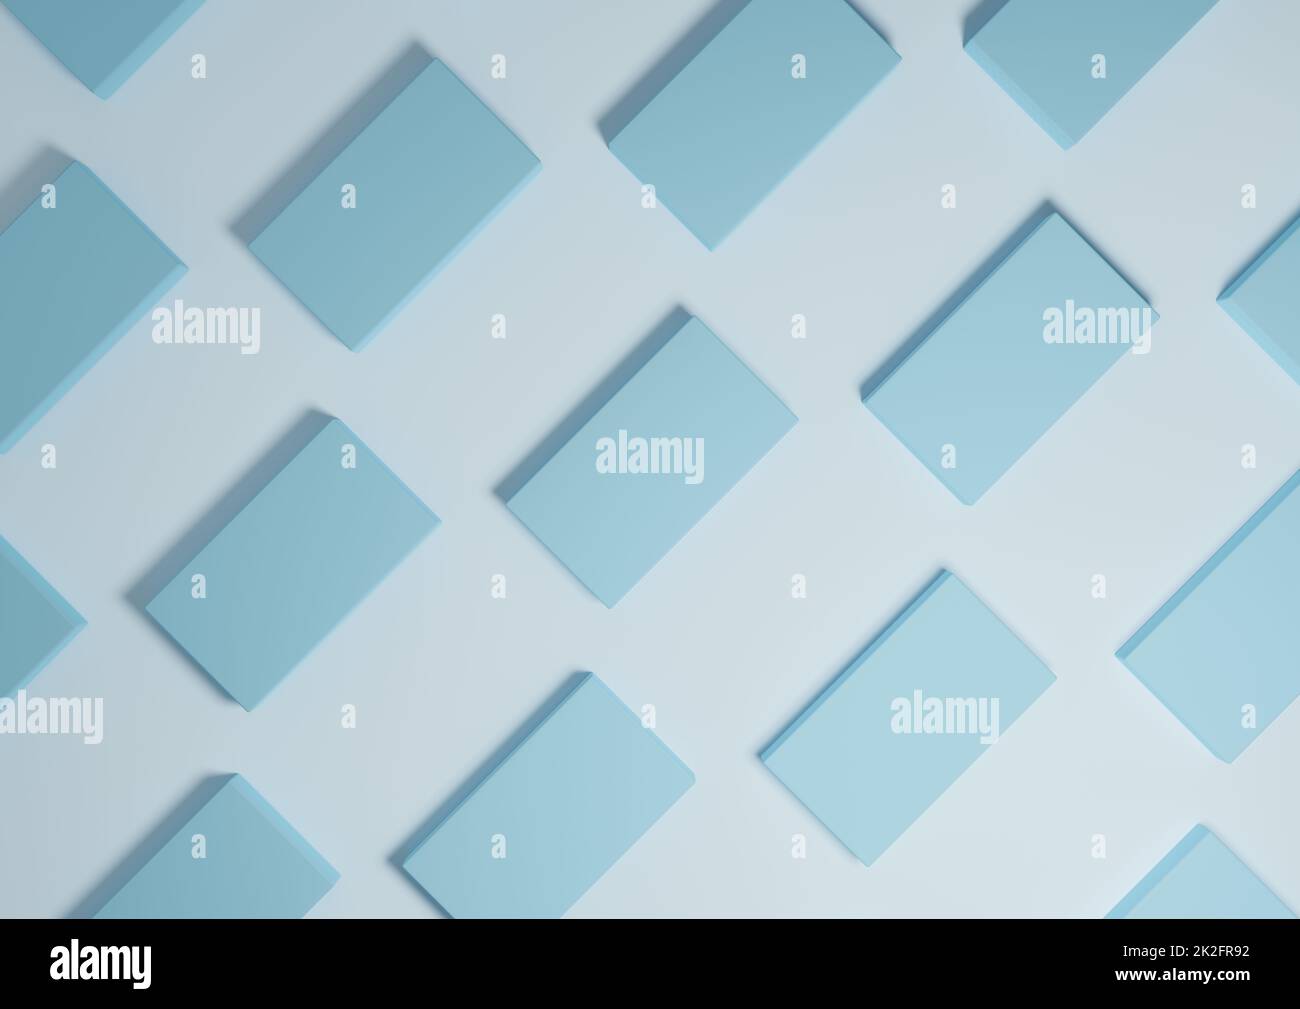 Chiaro, pastello, baby blu, rendering 3D minimal, semplice, moderno display piatto con vista dall'alto sullo sfondo con supporti quadrati ripetitivi in un motivo Foto Stock